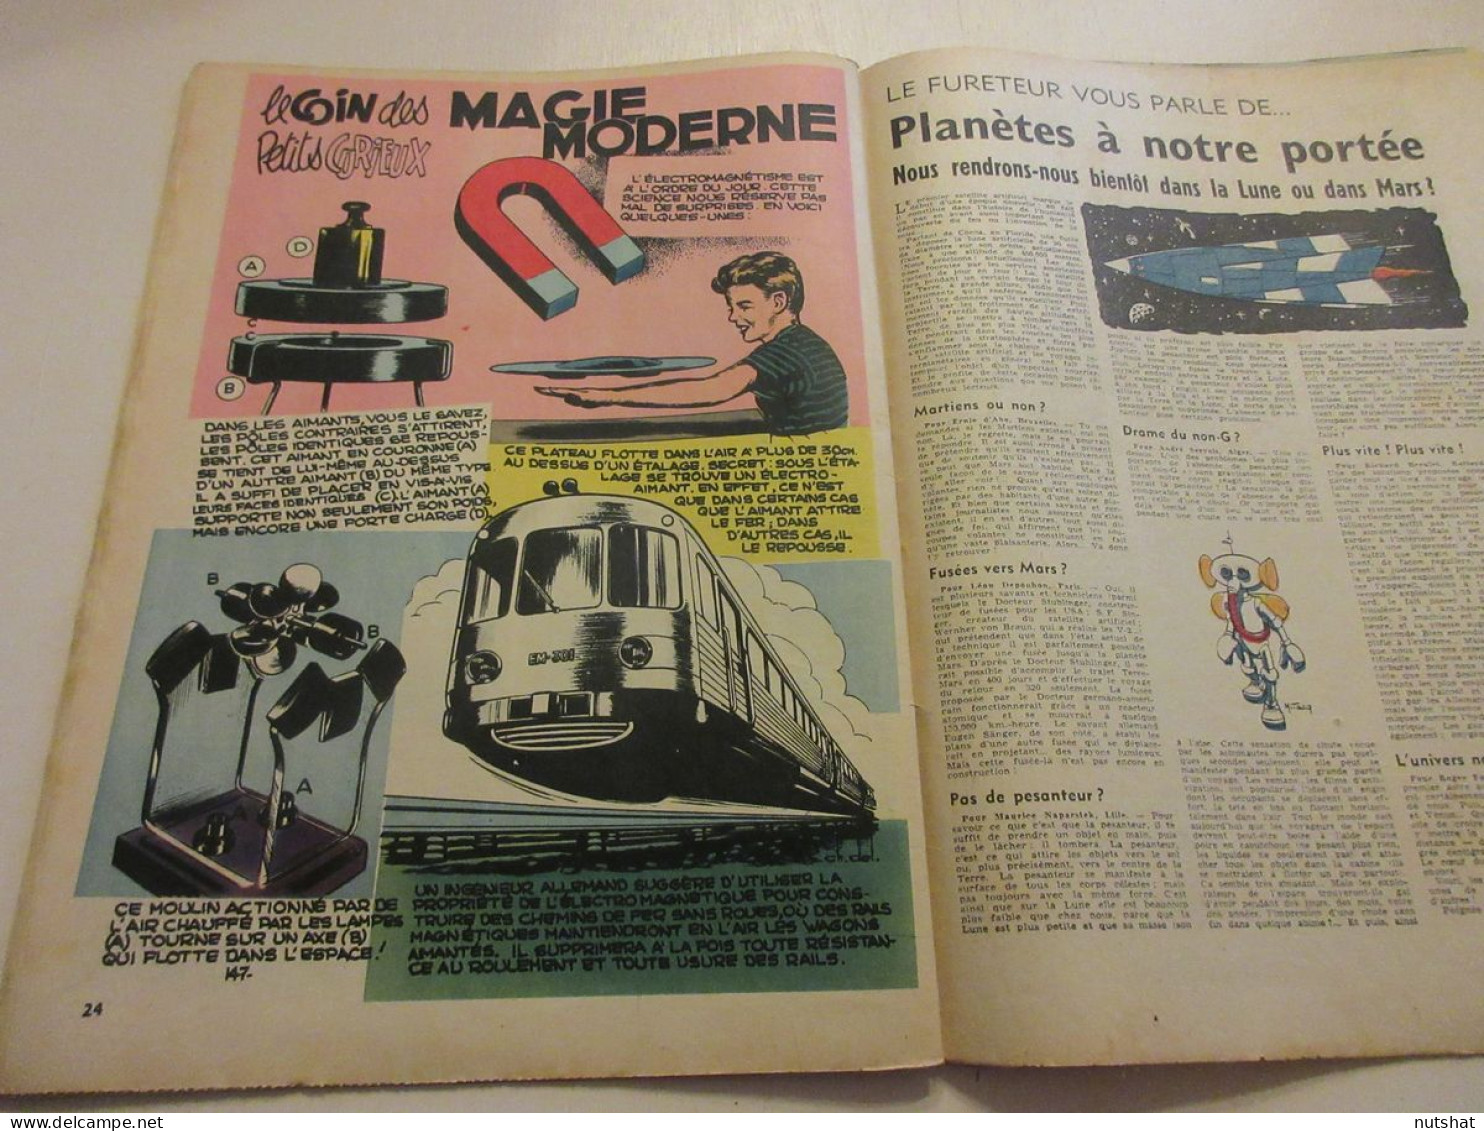 SPIROU 0996 16.05.1957 ESPACE PLANETES A NOTRE PORTEE MAGIE MODERNE F. De BRUYNE - Spirou Magazine